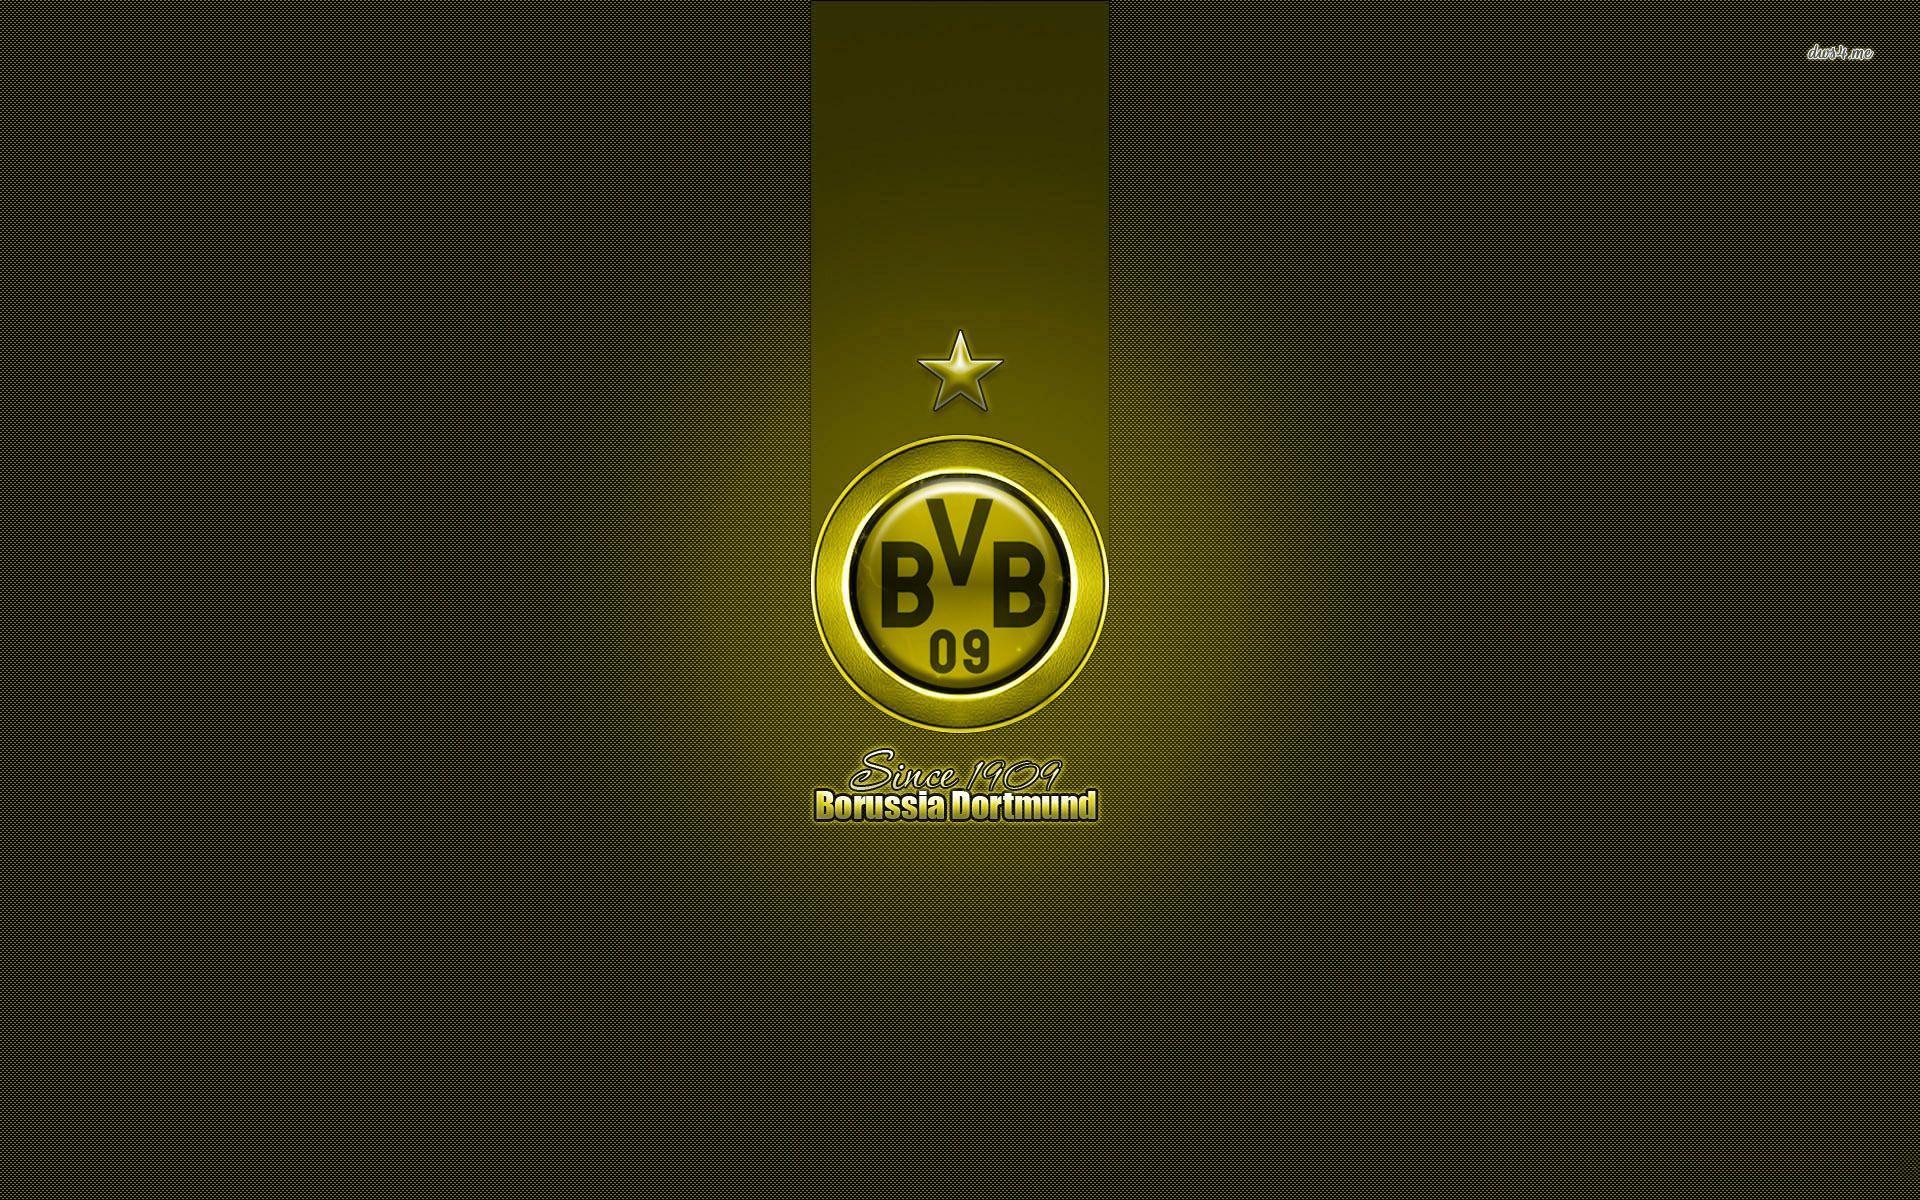 Borussia Dortmund HD Wallpaper And Photo download